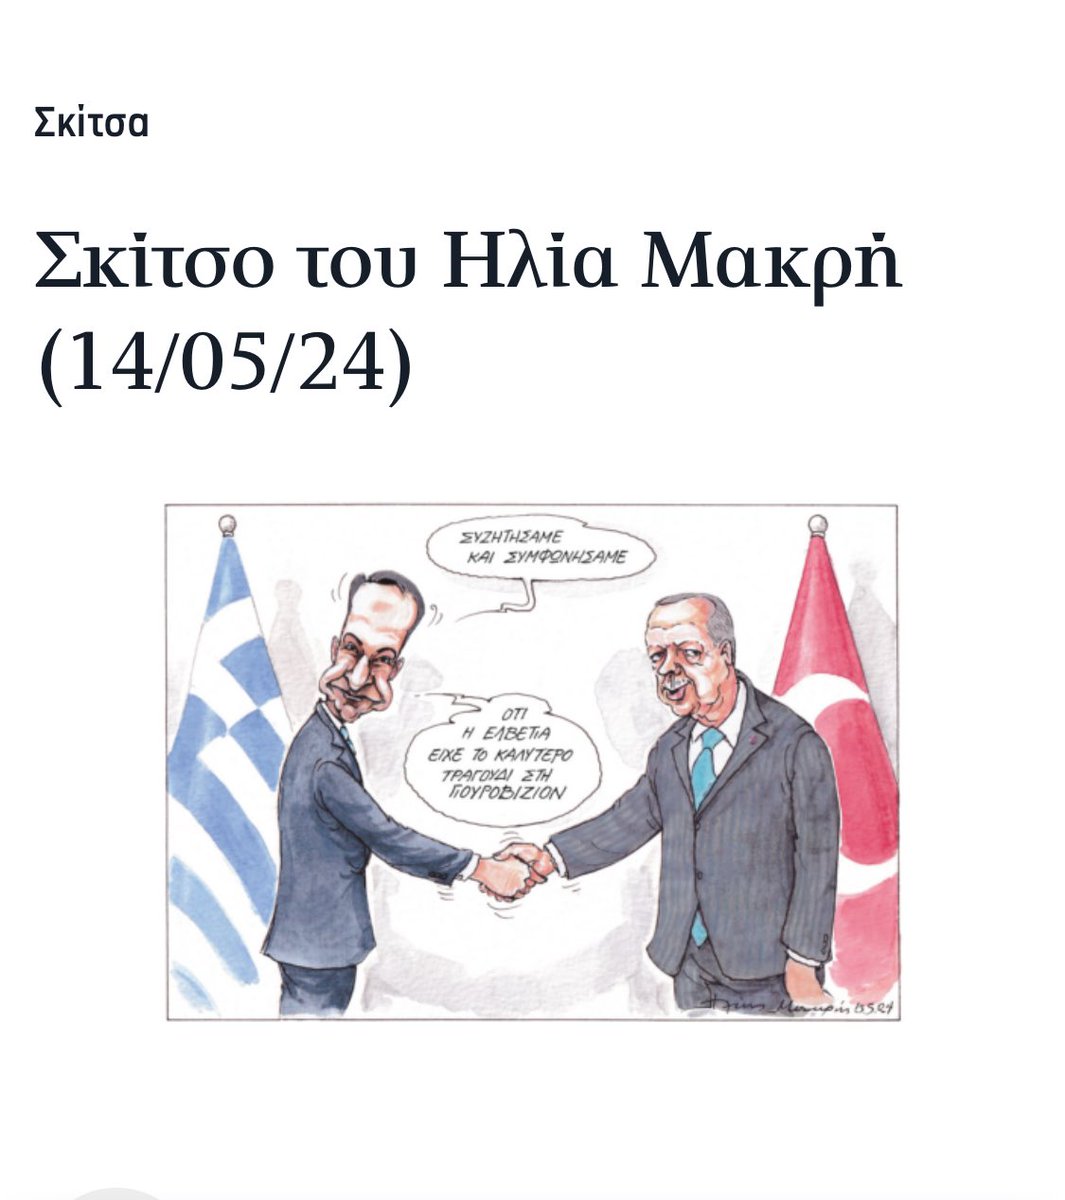 Bugün Yunanistan’ın önde gelen gazetesi Kathimerini’de çıkan karikatür. Mitsotakis: Konuştuk ve Anlaştık. İsviçre’nin Eurovision’da en iyi şarkı olduğunda mutabık kaldık. Hulâsa, sorunlar hala masada :)